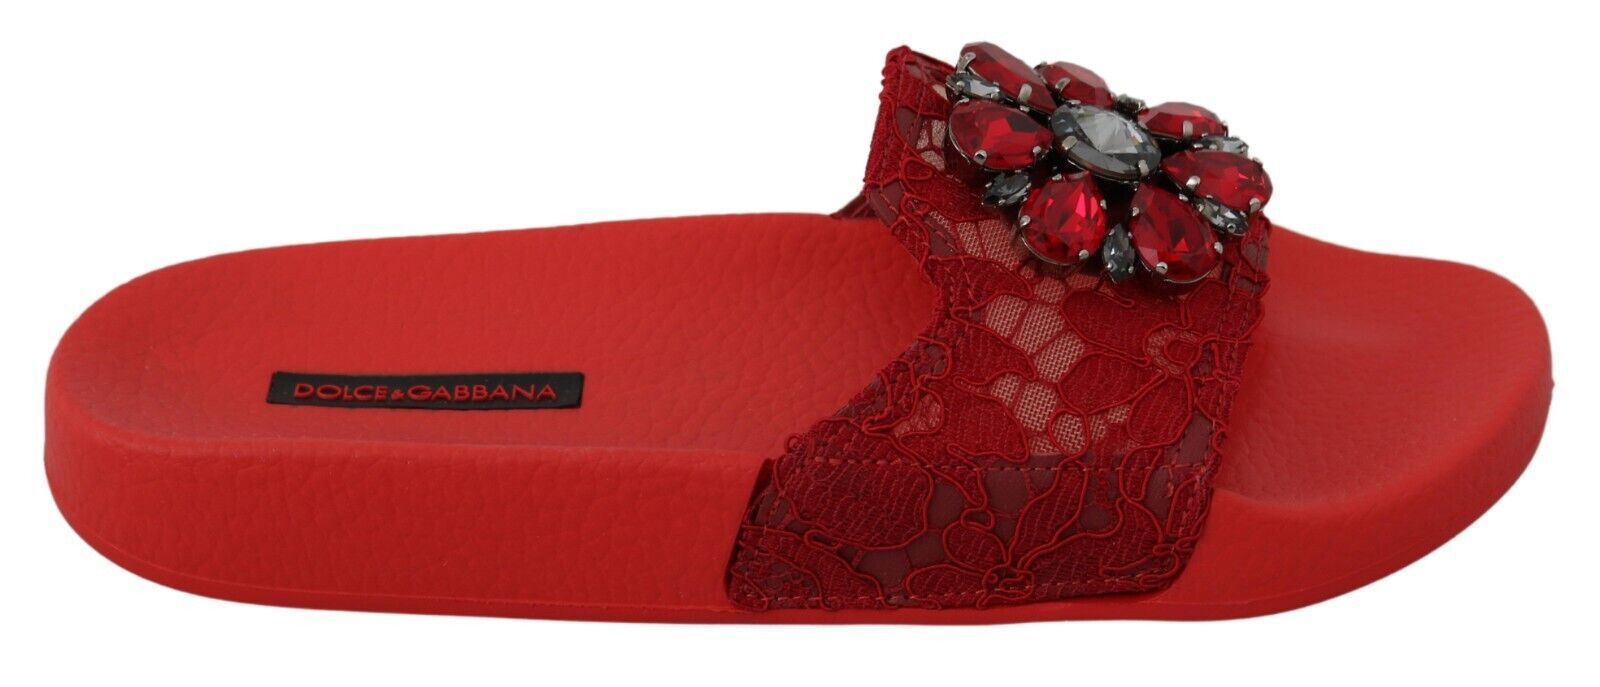 Red Dolce & Gabbana Floral Lace Crystal-Embellished Slide Flats EU36/US5.5